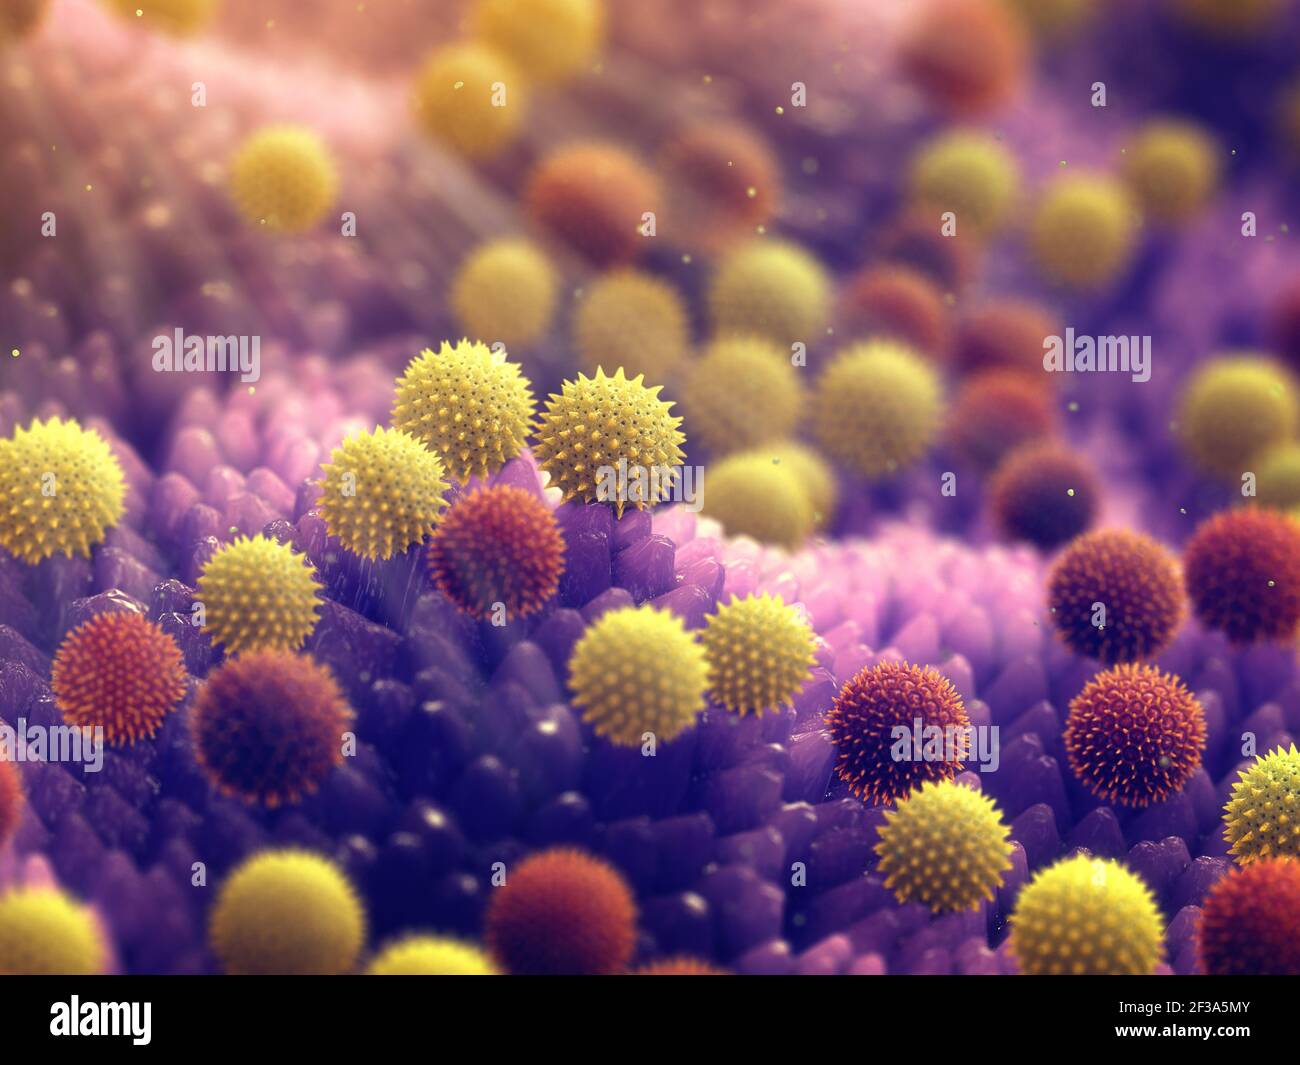 L'allergie au pollen est également connue sous le nom de rhume des foins ou de rhinite allergique. Illustration des grains de pollen. Banque D'Images